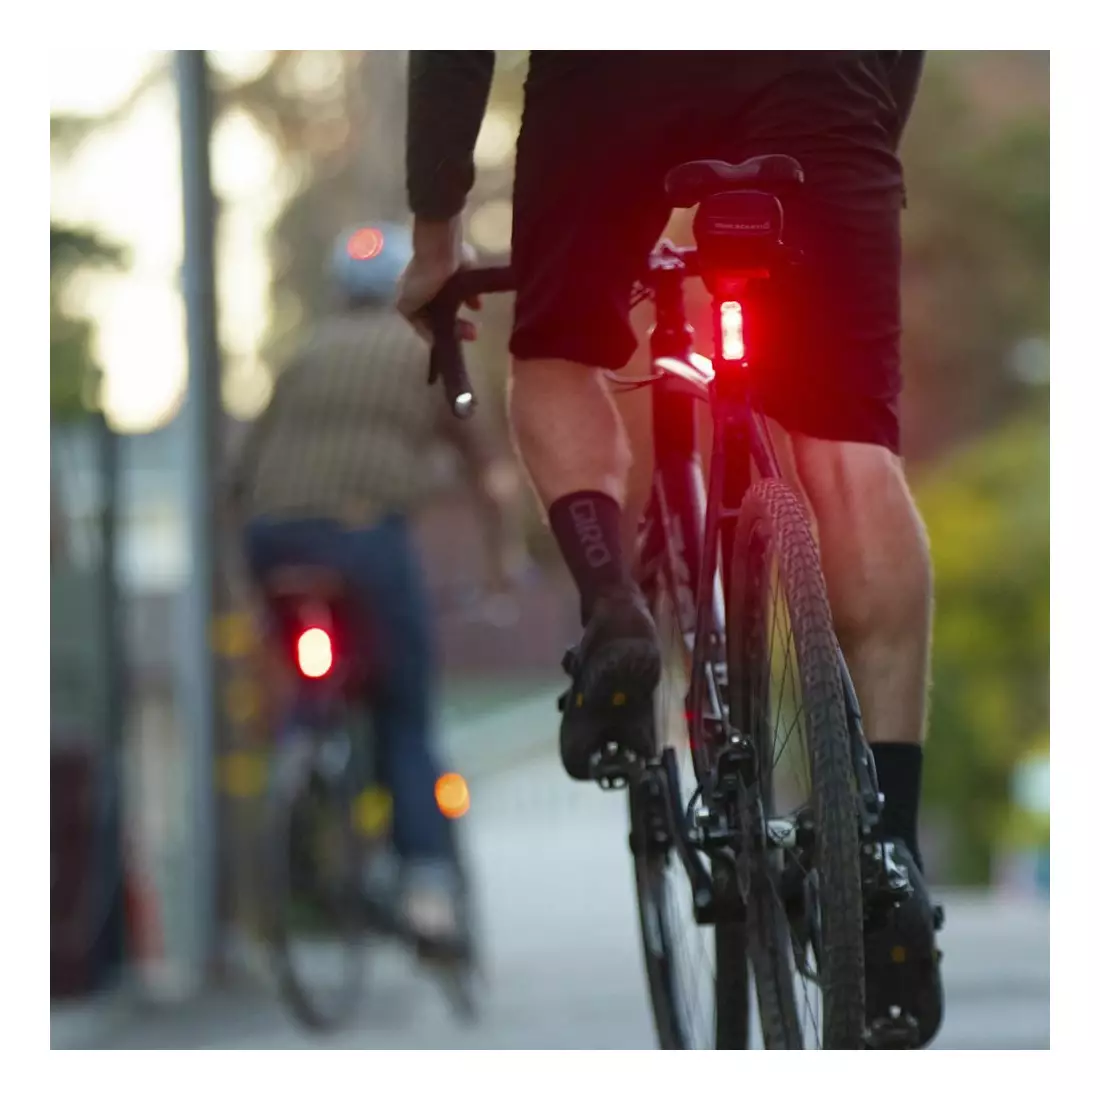 BLACKBURN készlet LUMINATE 360 blitz kerékpár lámpák elöl + hátul + oldalt